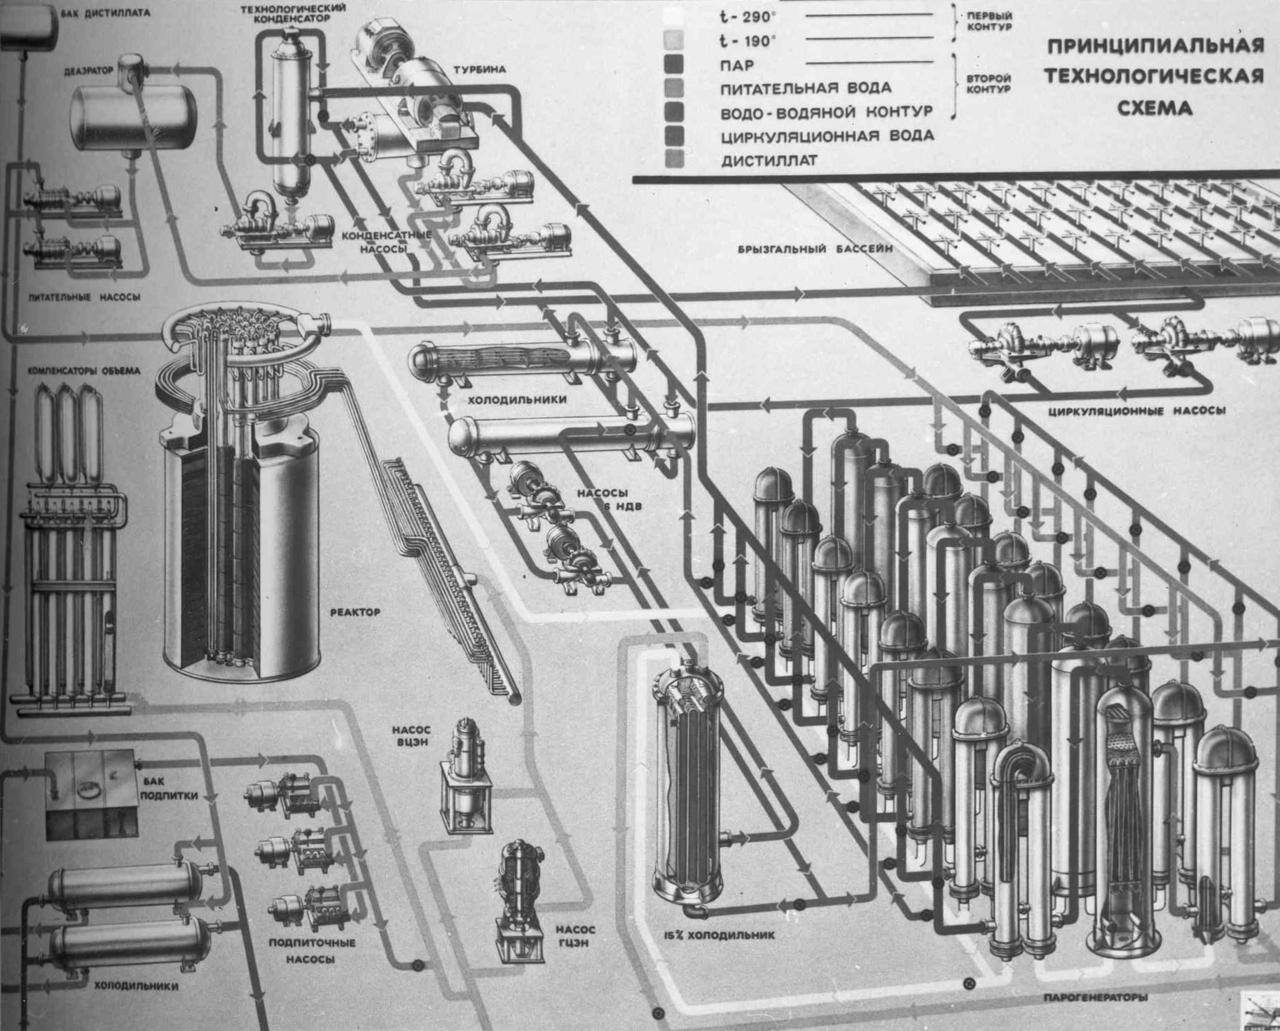 Принципиальная технологическая схема оборудования атомной станции